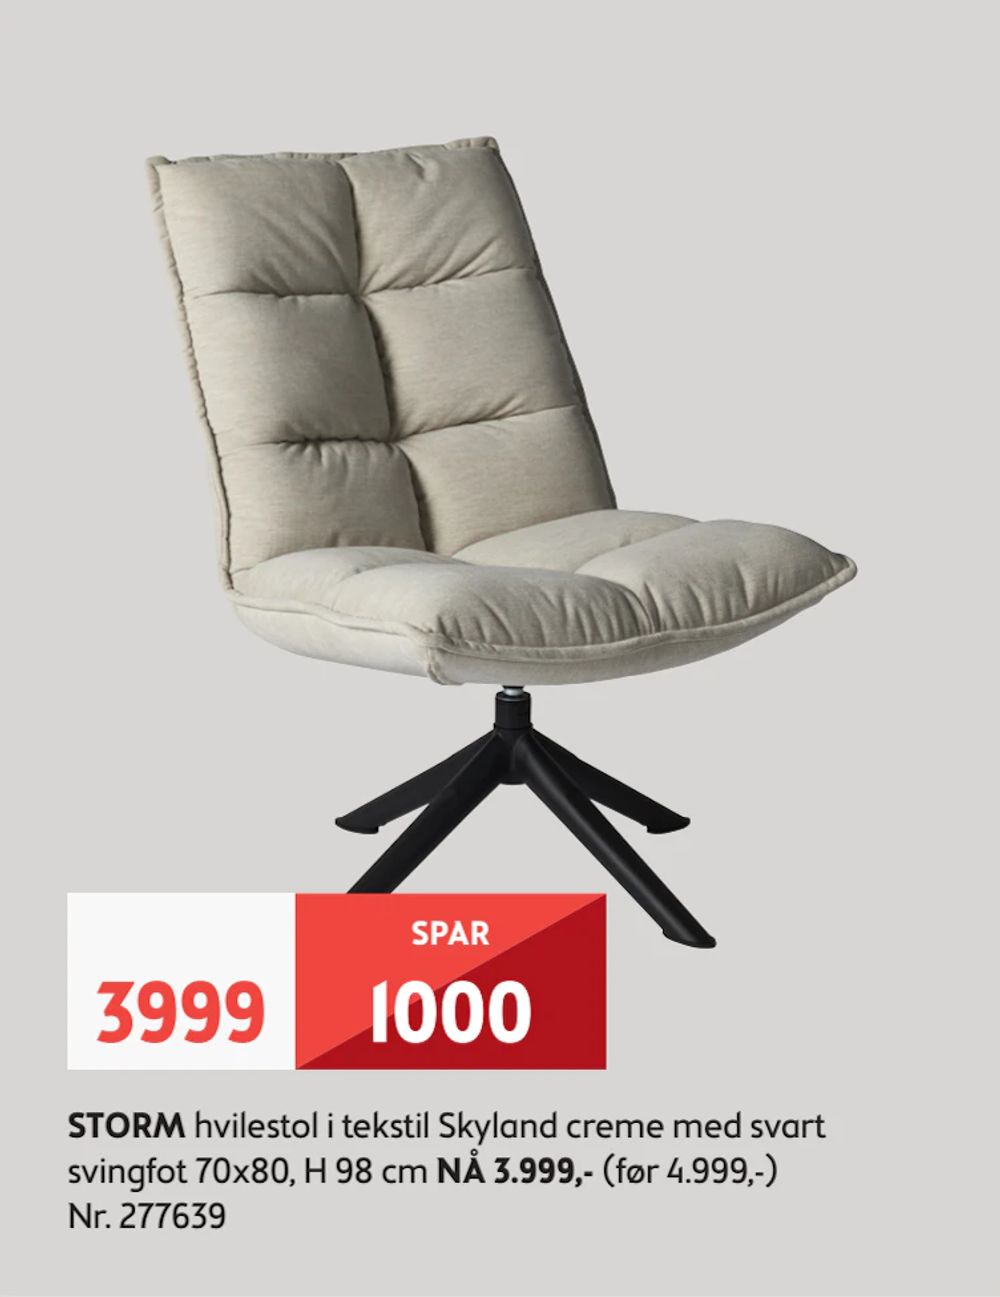 Tilbud på STORM hvilestol i tekstil Skyland creme med svart svingfot fra Bohus til 3 999 kr